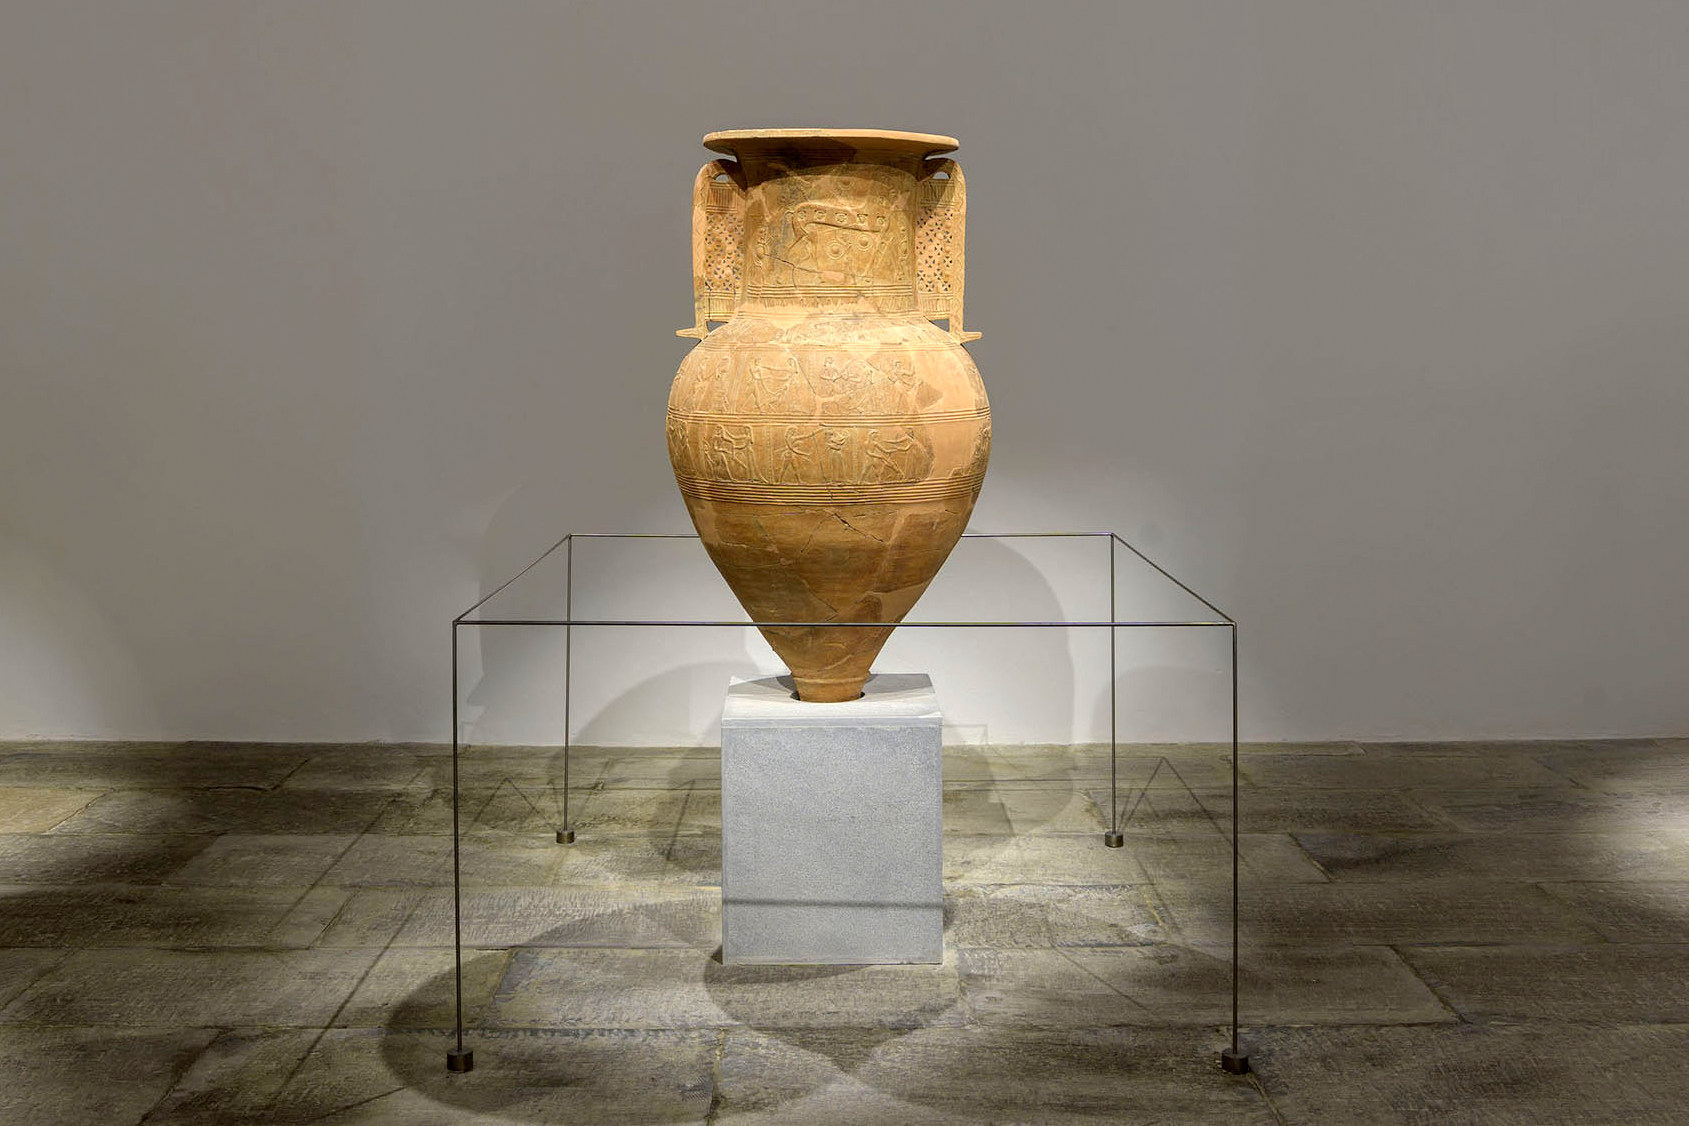 Ο πίθος της Μυκόνου με ανάγλυφες παραστάσεις σκηνών του Τρωικού πολέμου, 7ος π.Χ. αιώνας